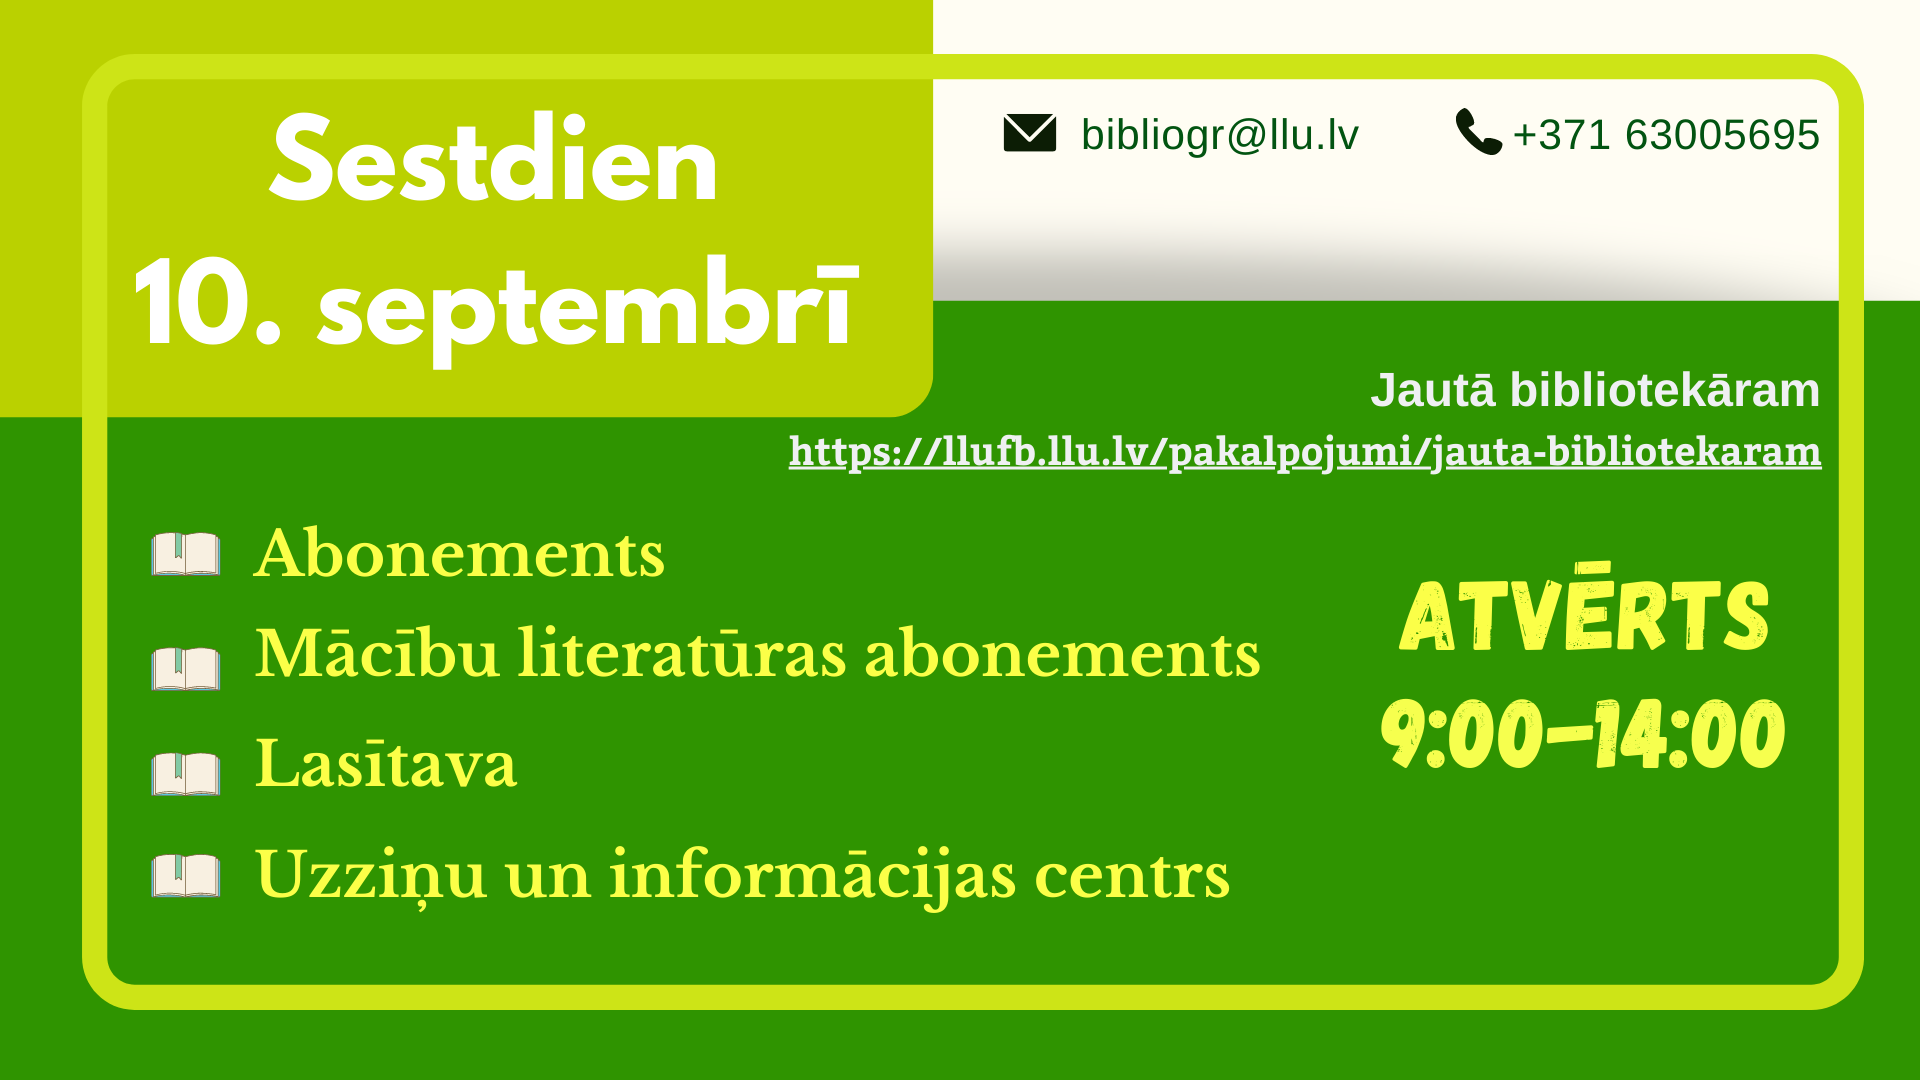 Sestdien, 10. septembrī, bibliotēka lasītājiem atvērta no plkst. 9.00 līdz 14.00